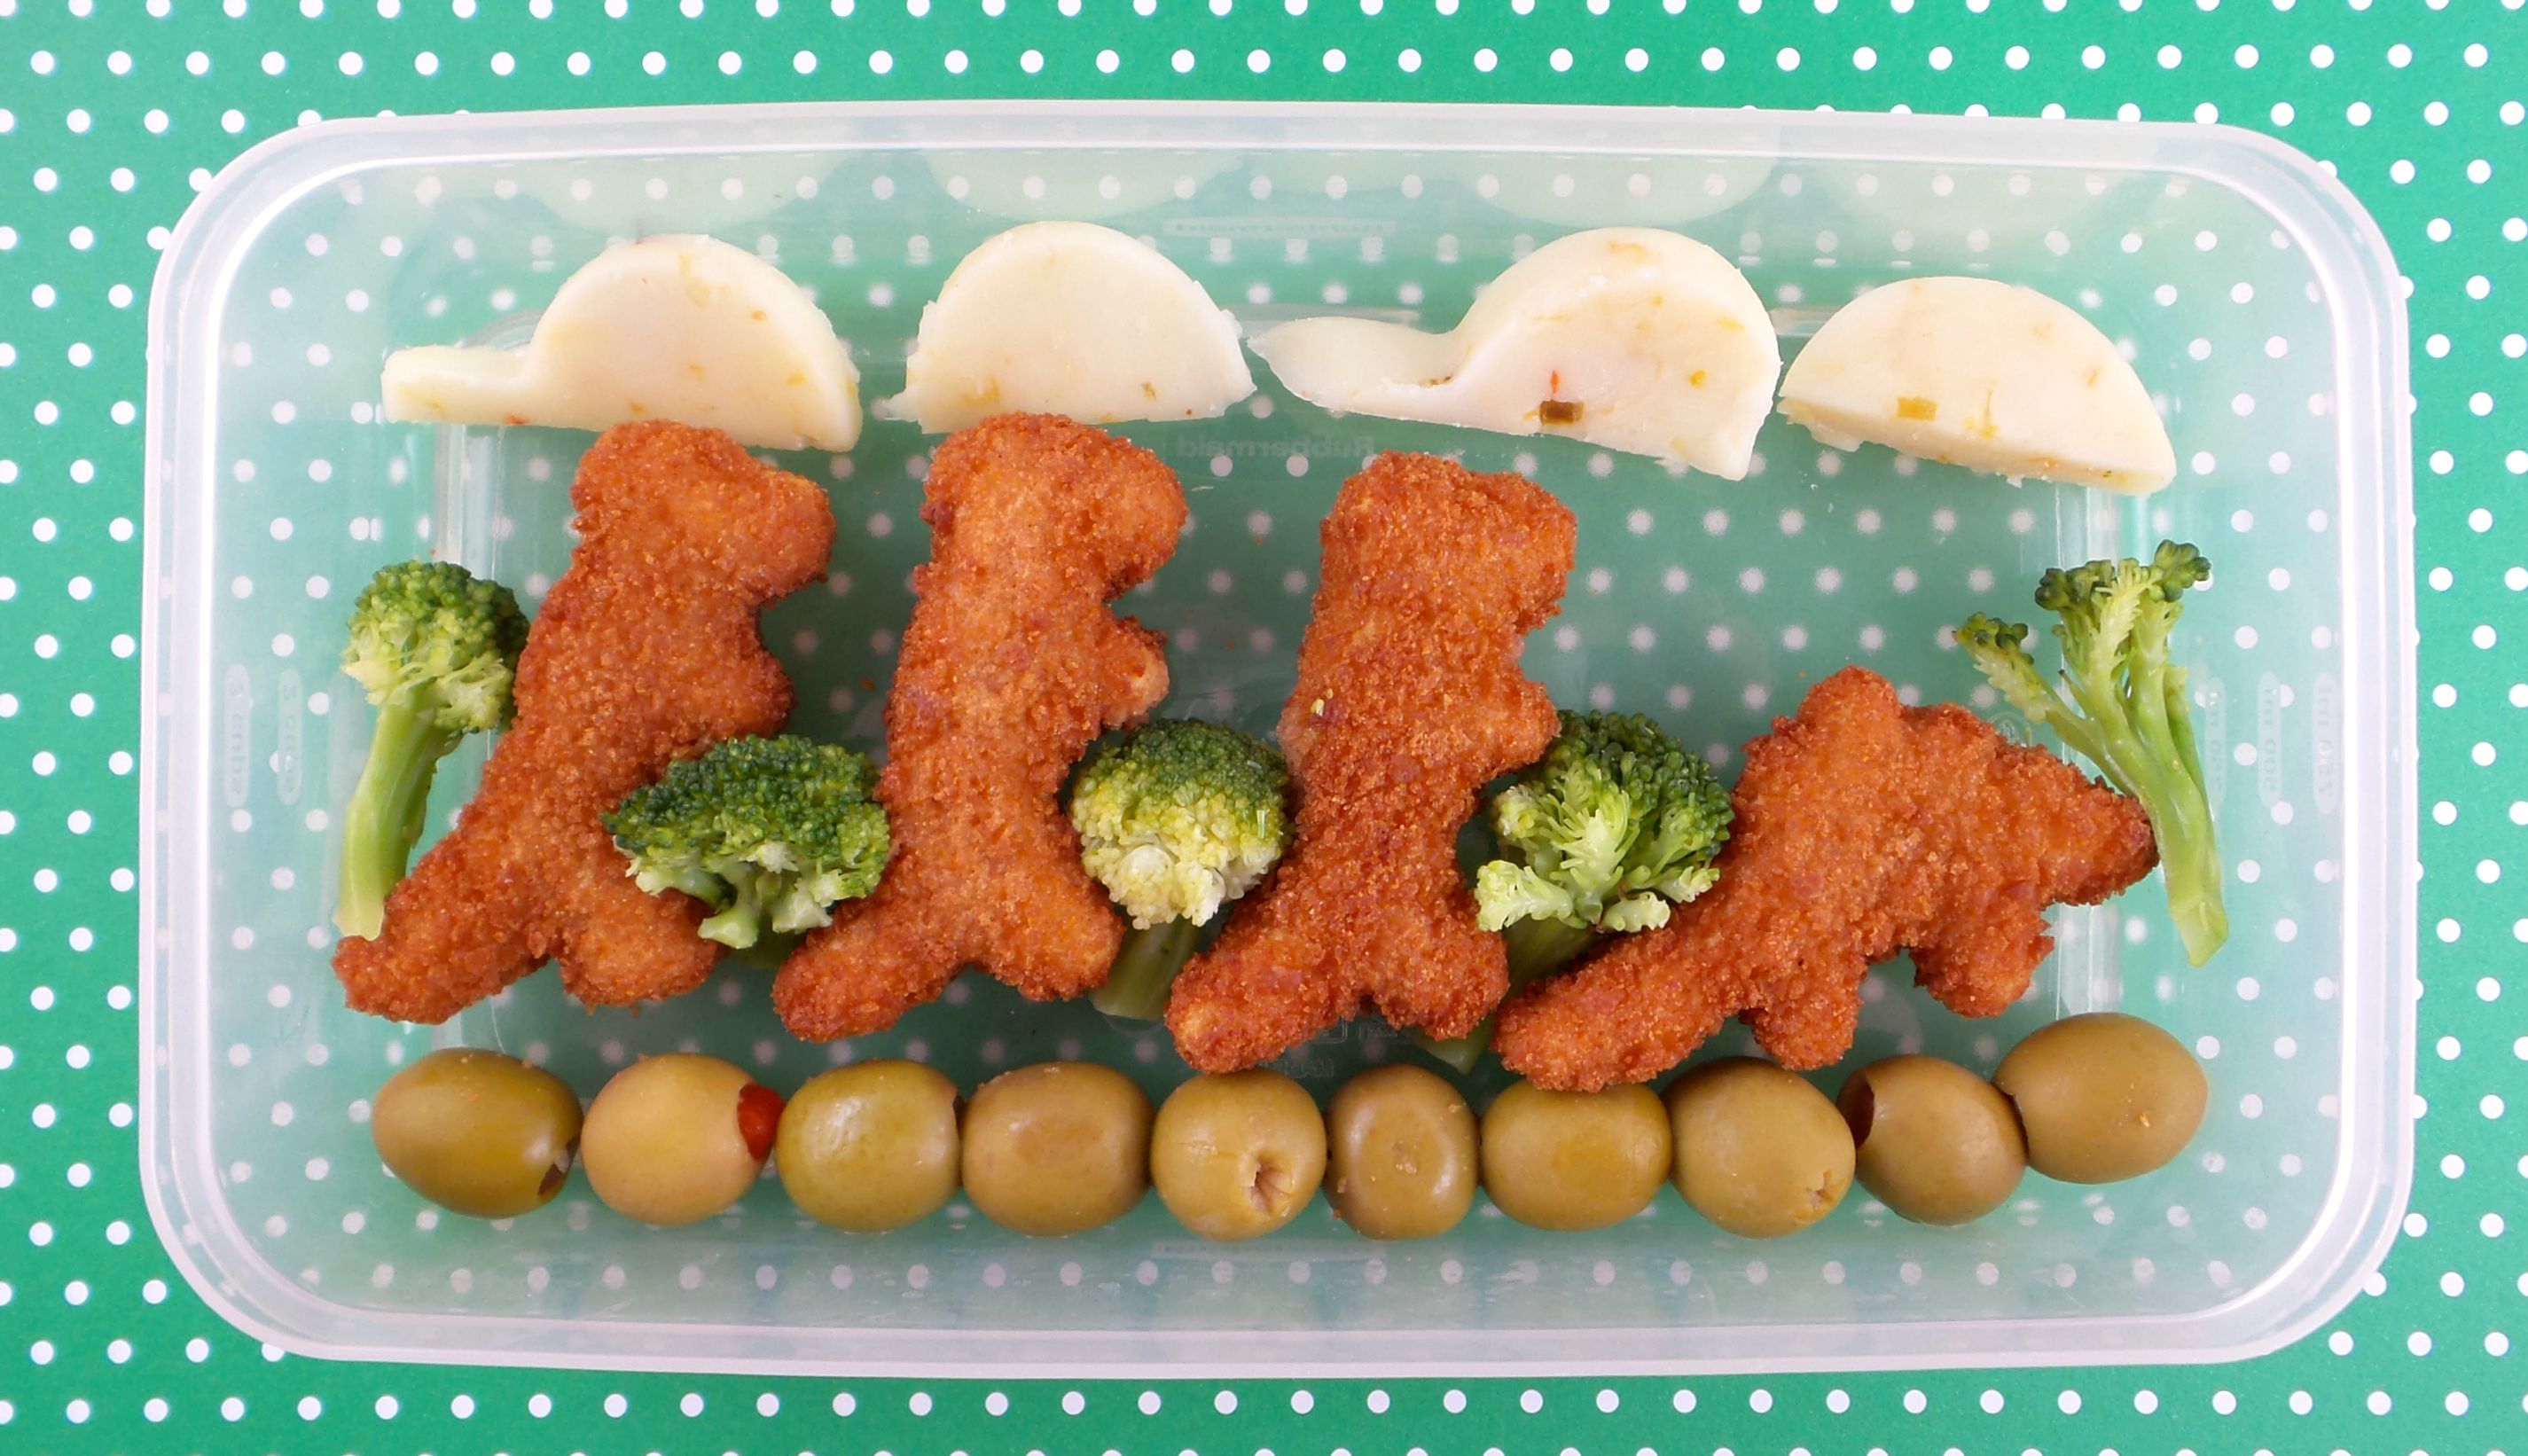 Easy Dinosaur Lunch for Kids